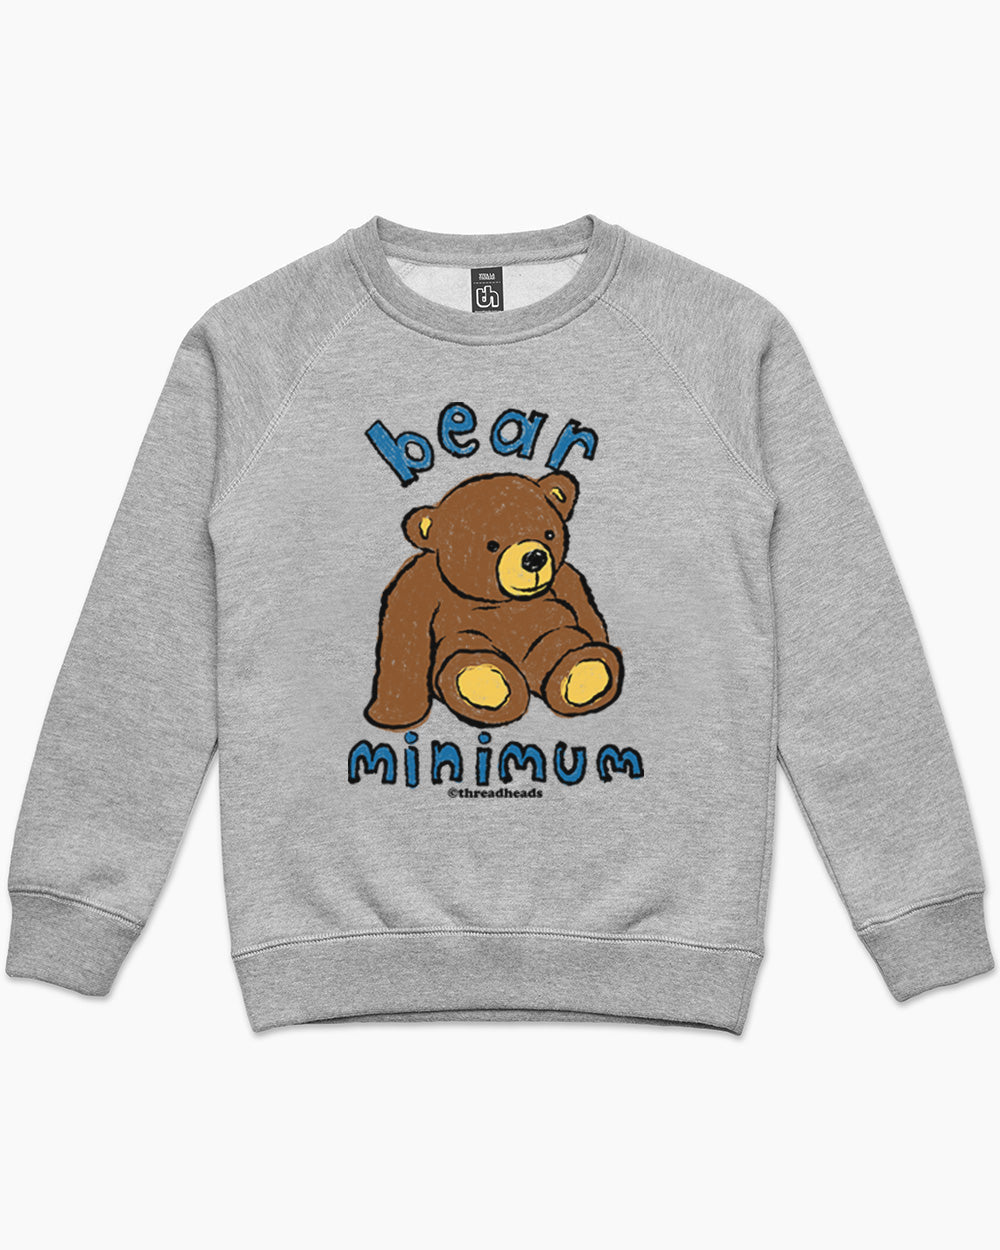 Bear Minimum Kids Jumper Australia Online Grey